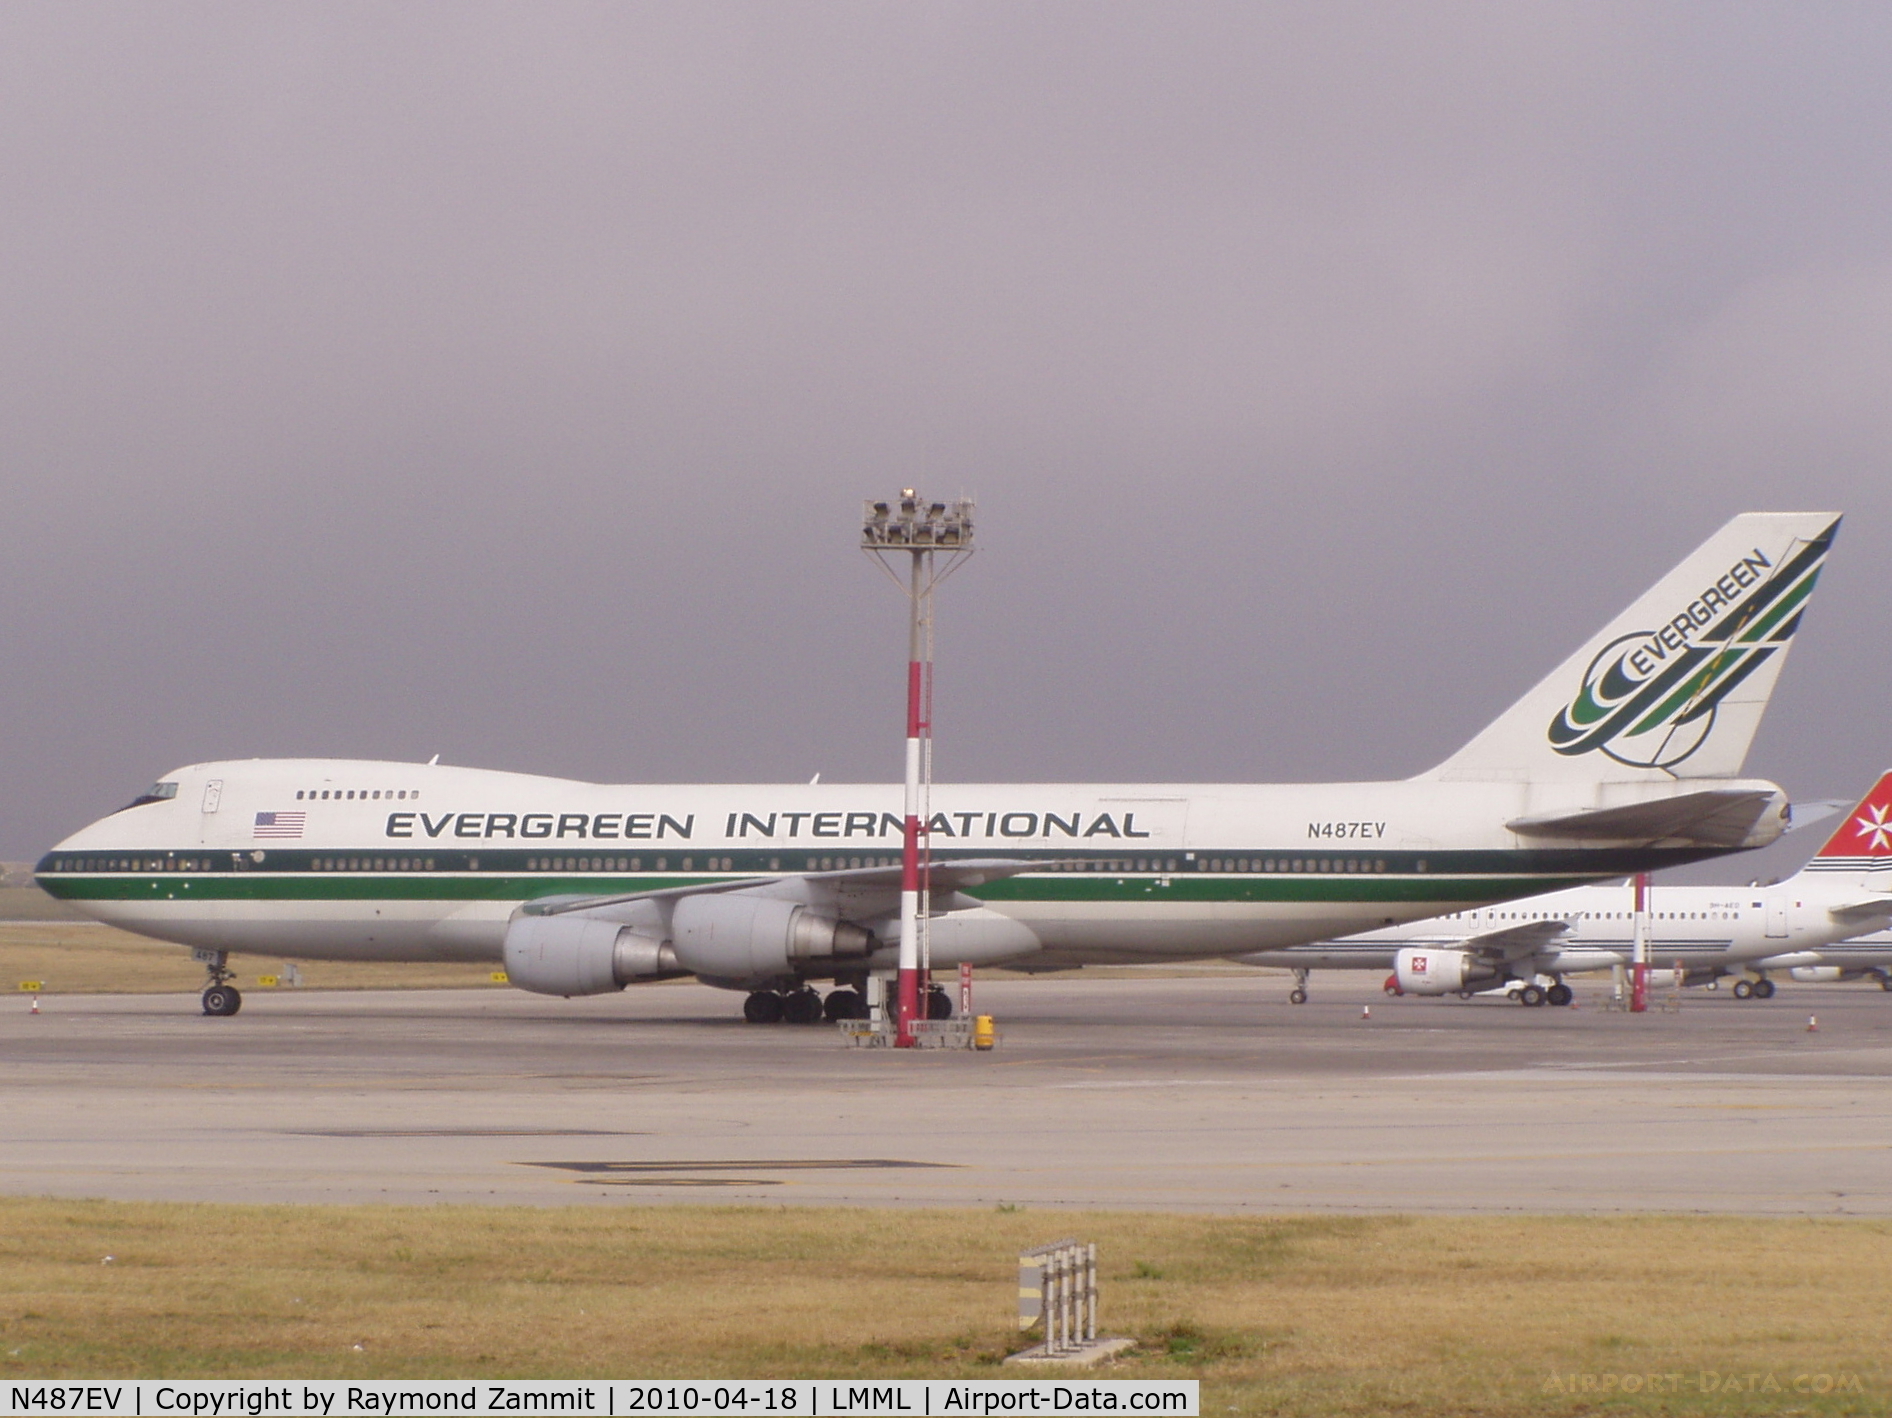 N487EV, 1985 Boeing 747-230B C/N 23286, B747 N487EV Evergreen International Airlines